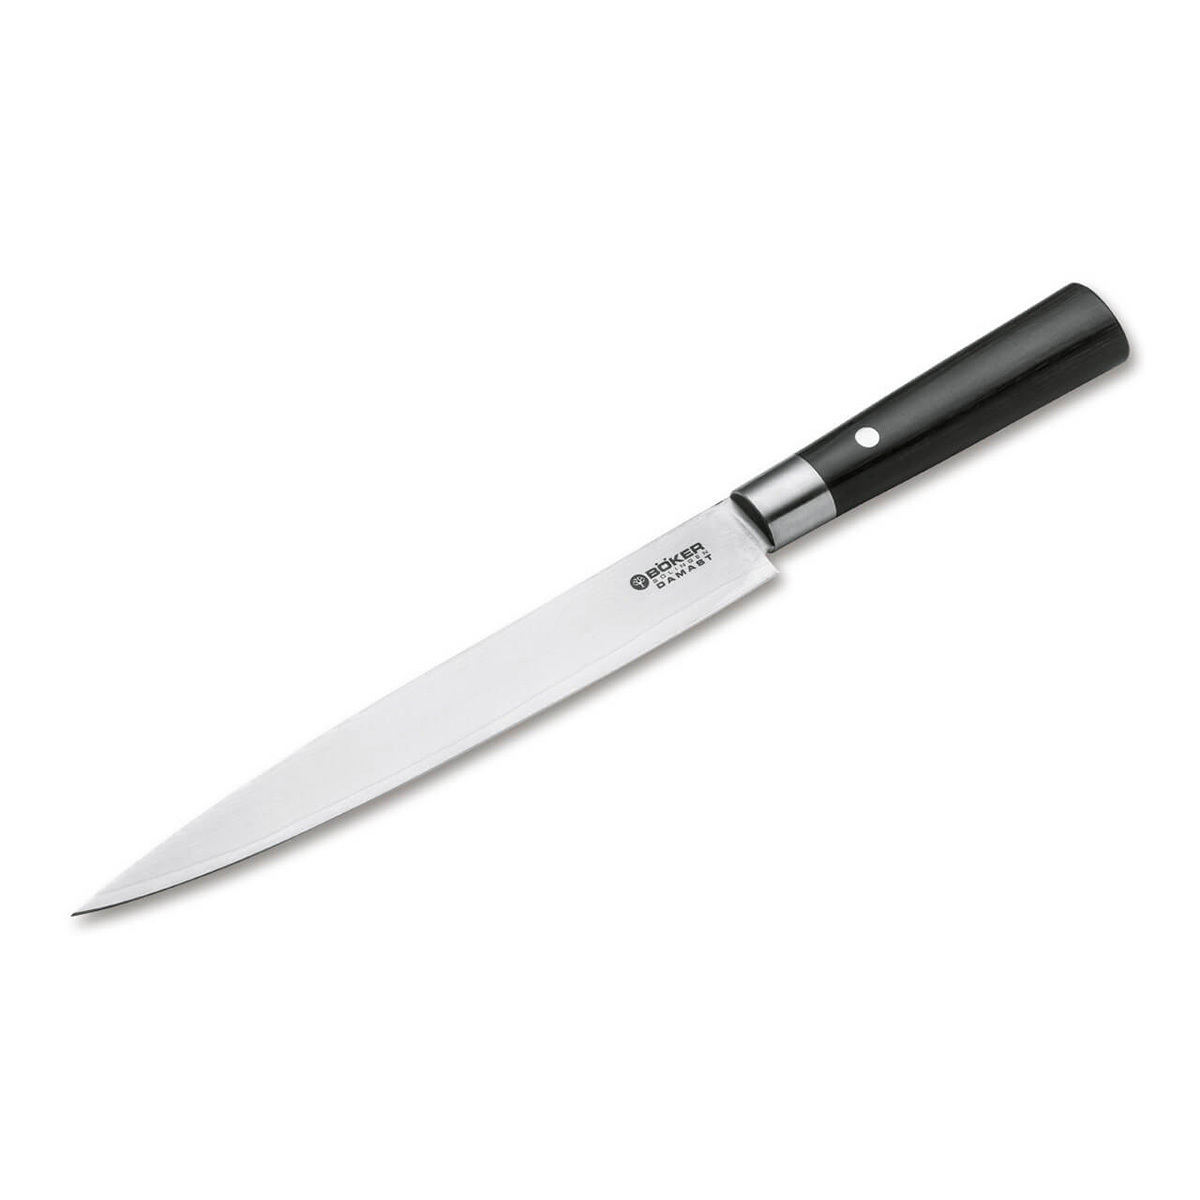 Кухонный нож для нарезки Boker 22 см, сталь VG-10 в обкладках из дамасской стали, рукоять дерево